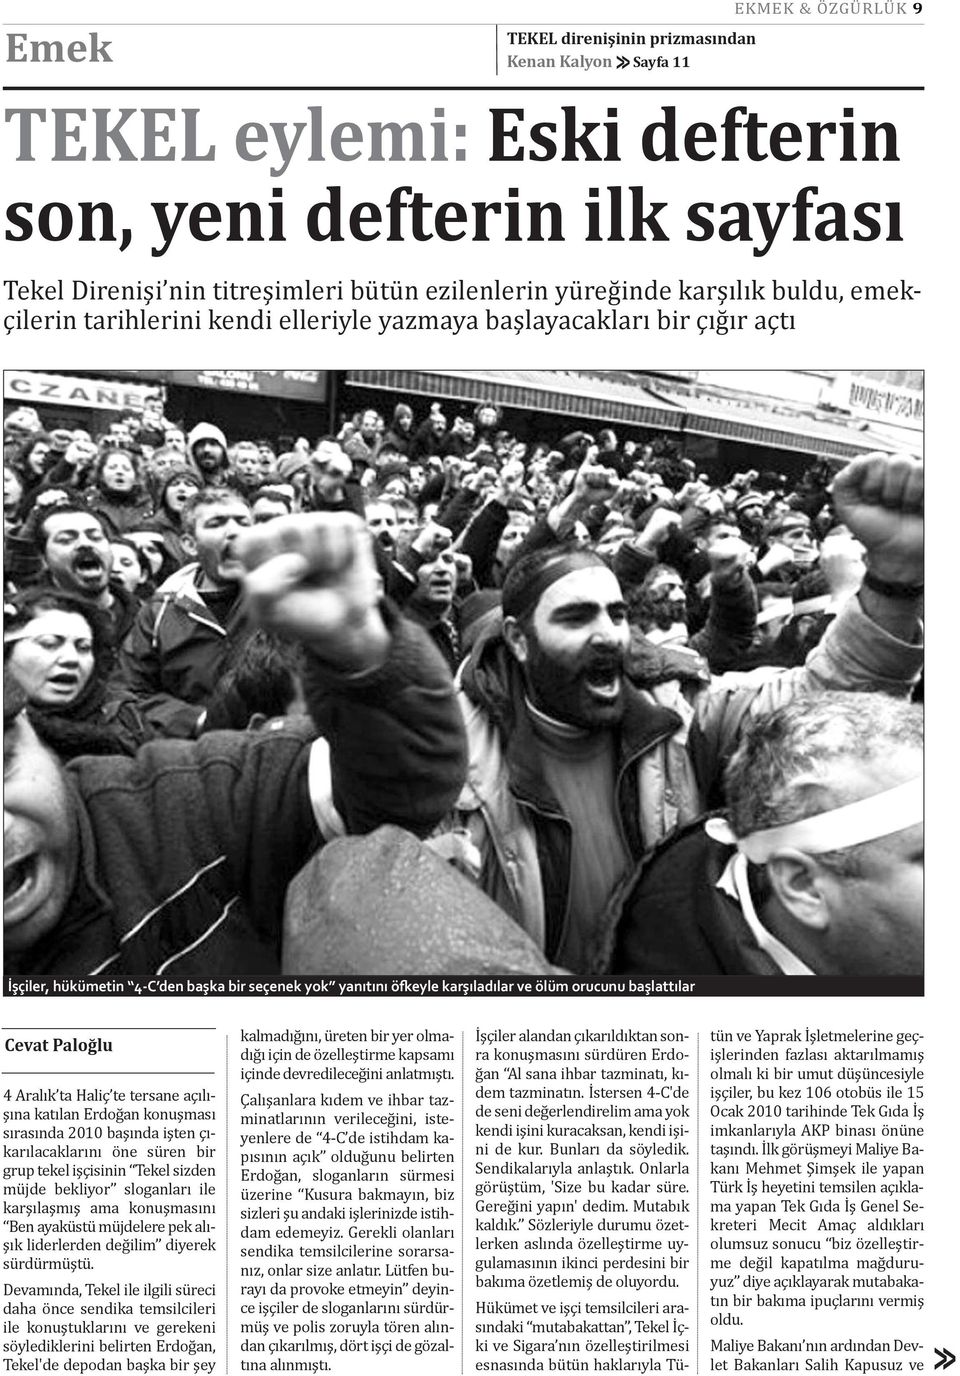 başlattılar Cevat Paloğlu 4 Aralık ta Haliç te tersane açılışına katılan Erdoğan konuşması sırasında 2010 başında işten çıkarılacaklarını öne süren bir grup tekel işçisinin Tekel sizden müjde